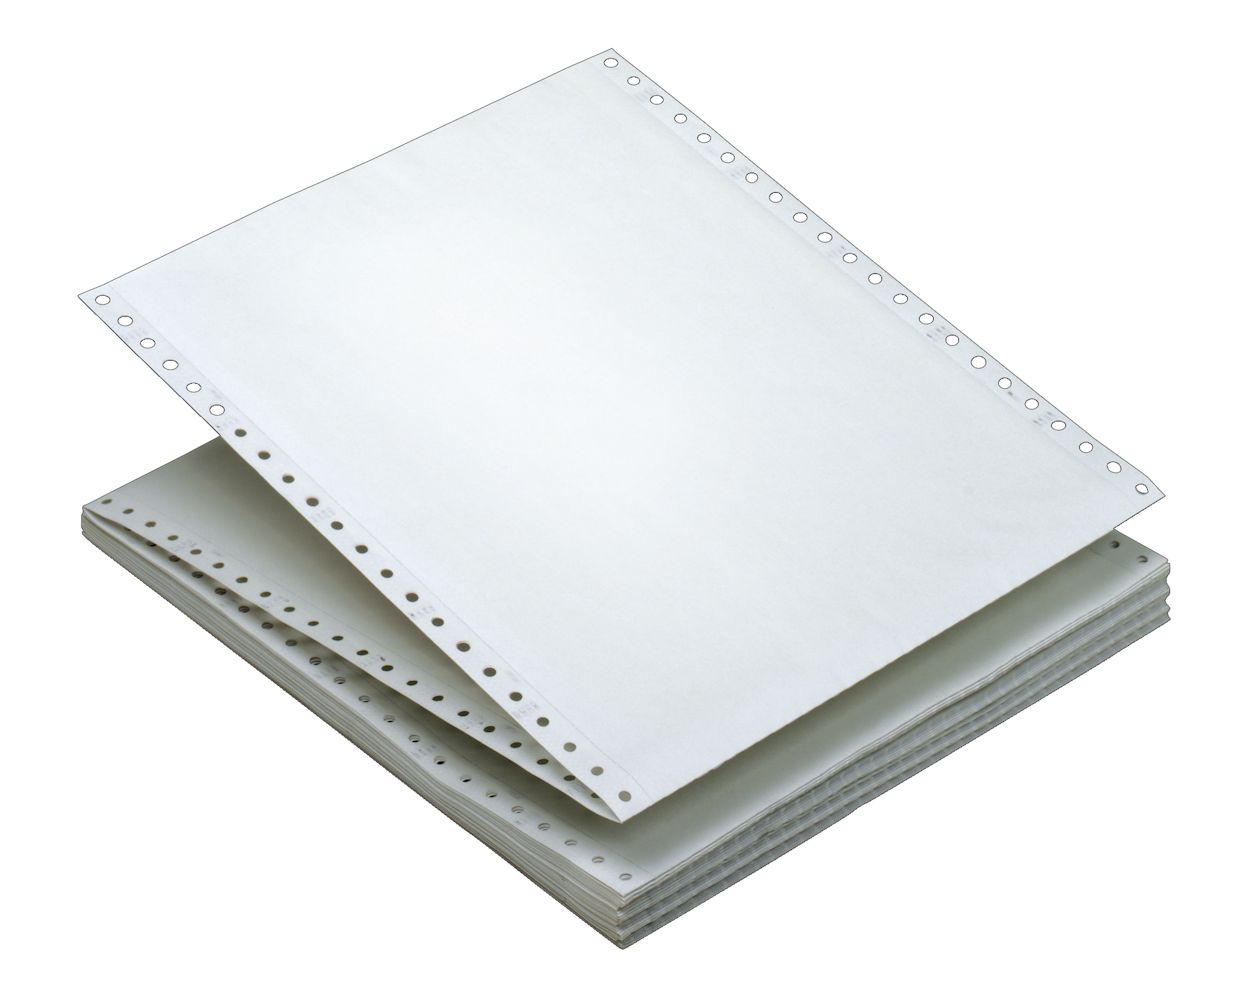 TOPS Computer Paper Plain, white, Ream Margins, 2-part carbonless, 15 lb,  1650 SH/CTN